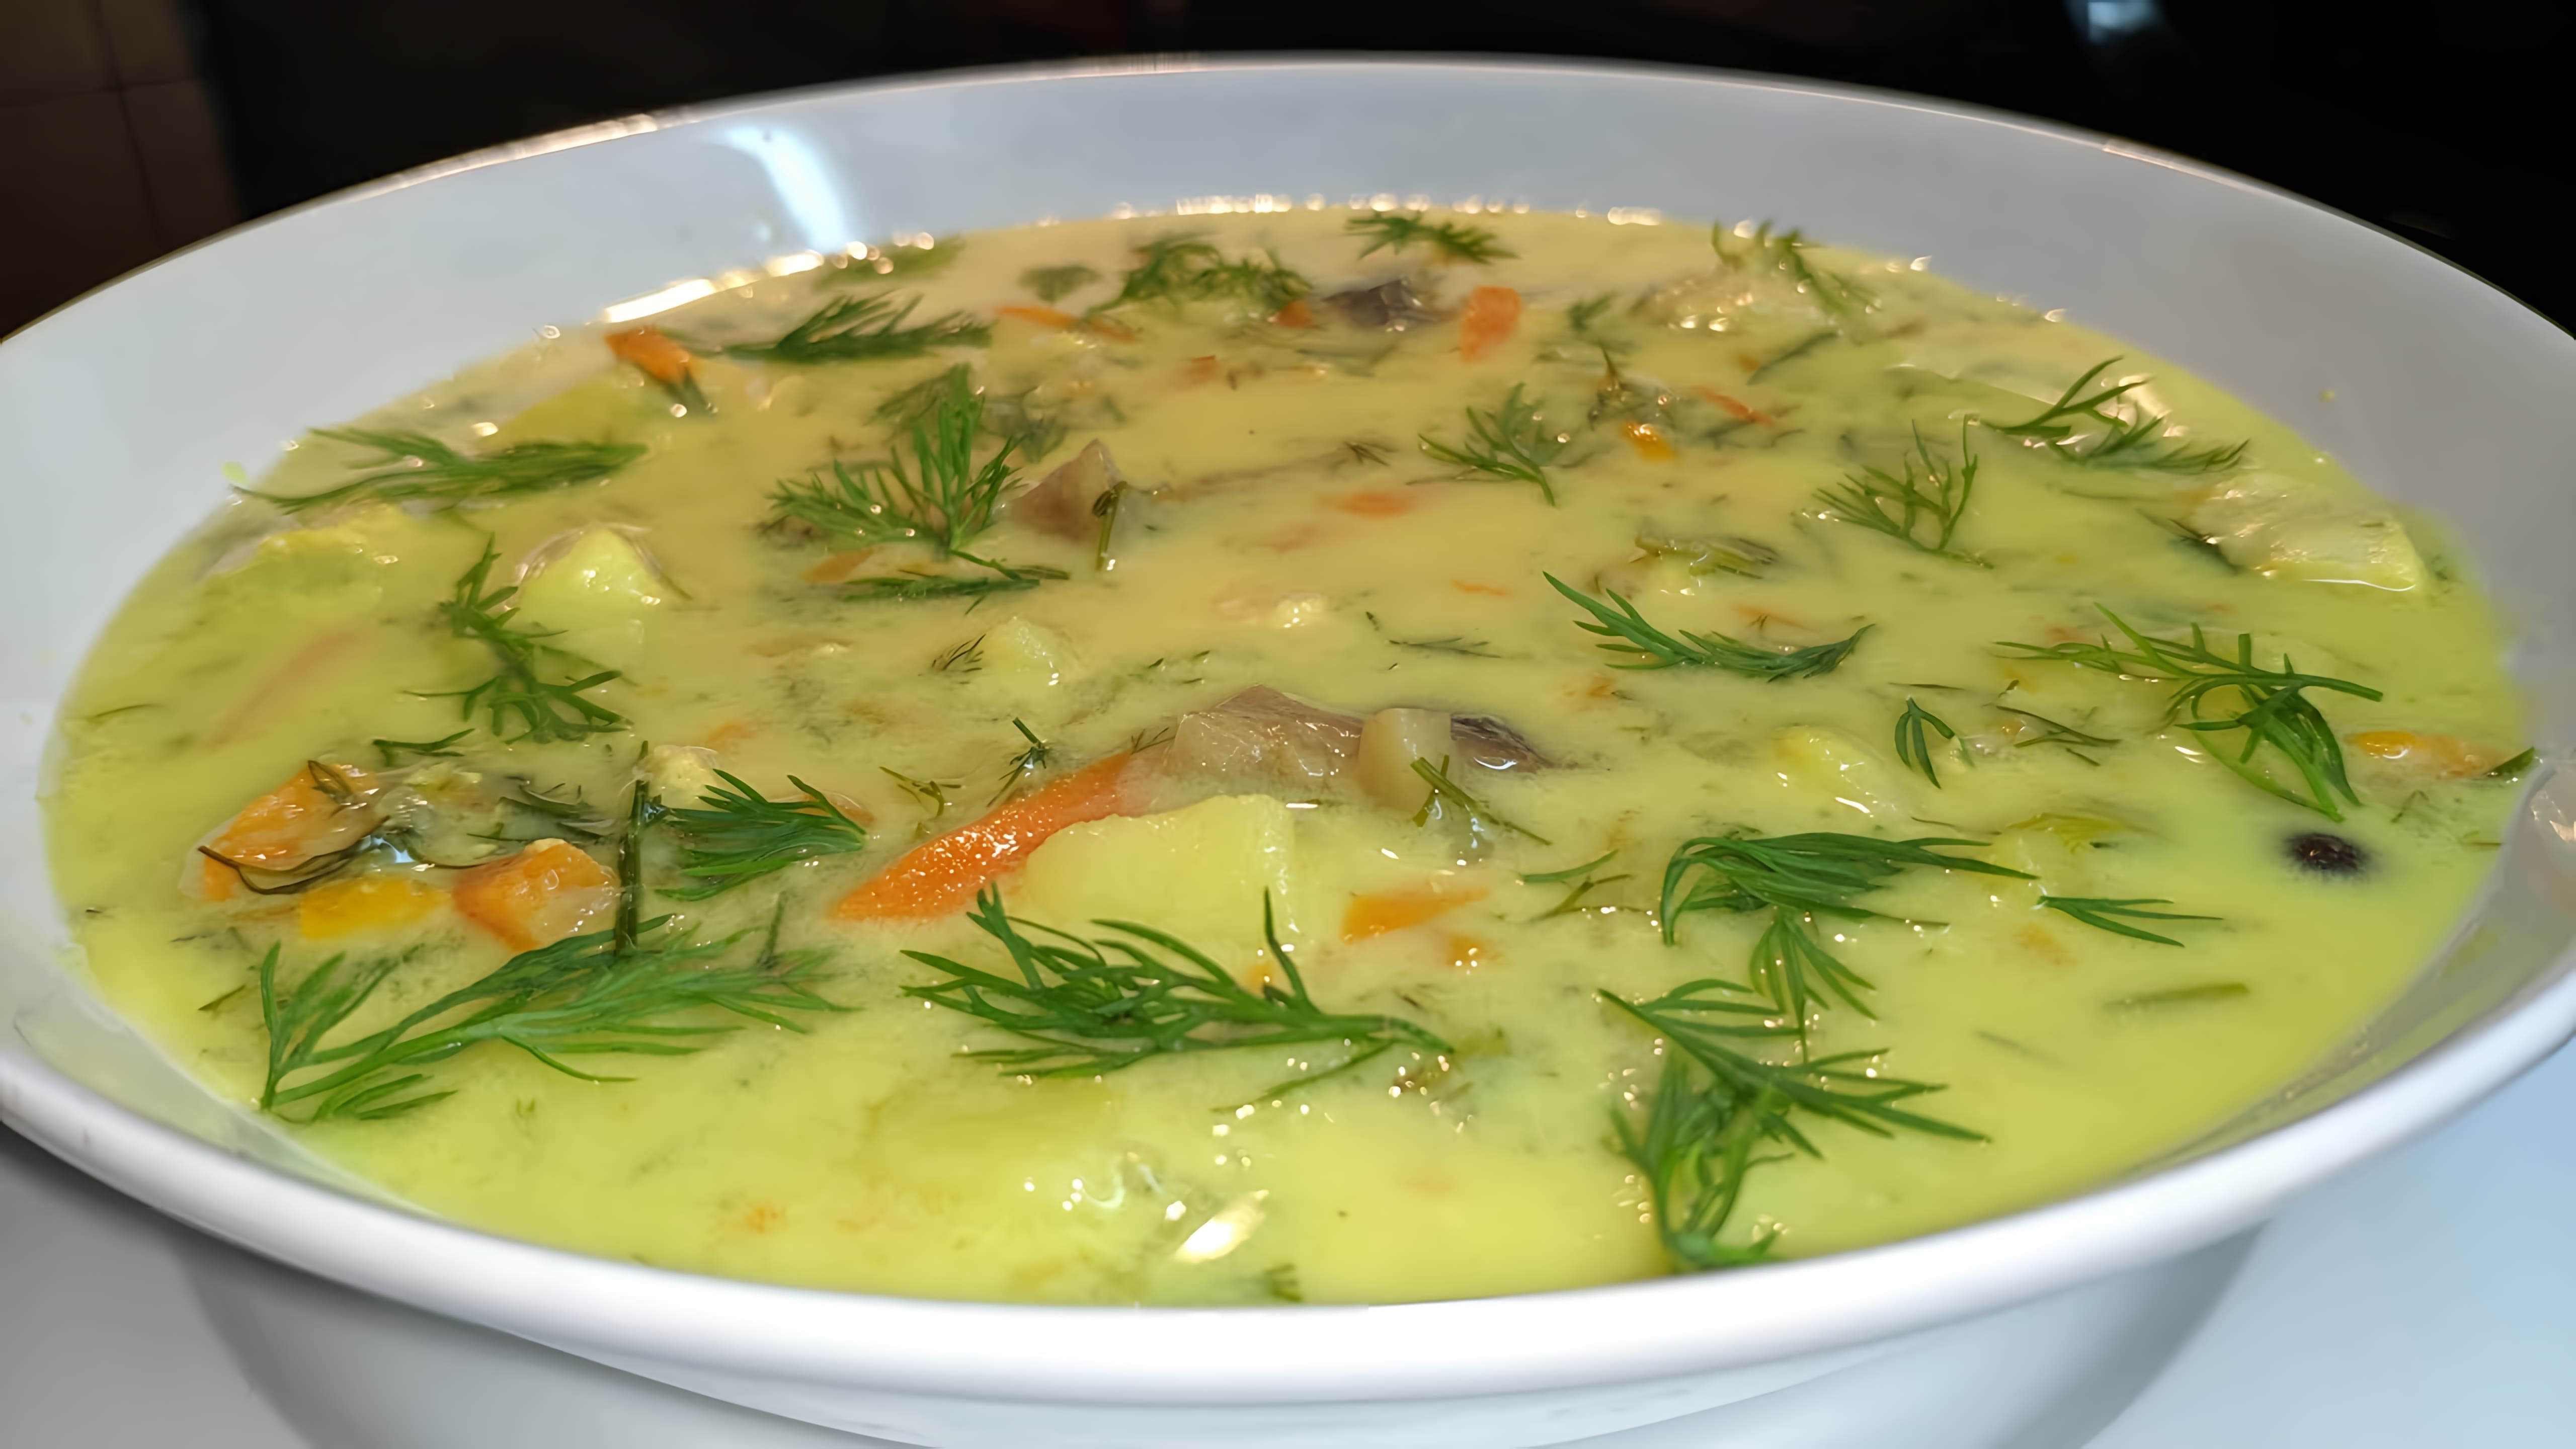 В этом видео представлен рецепт сырного супа с использованием куриного филе, моркови, лука, картофеля, шампиньонов, плавленого сыра и молока